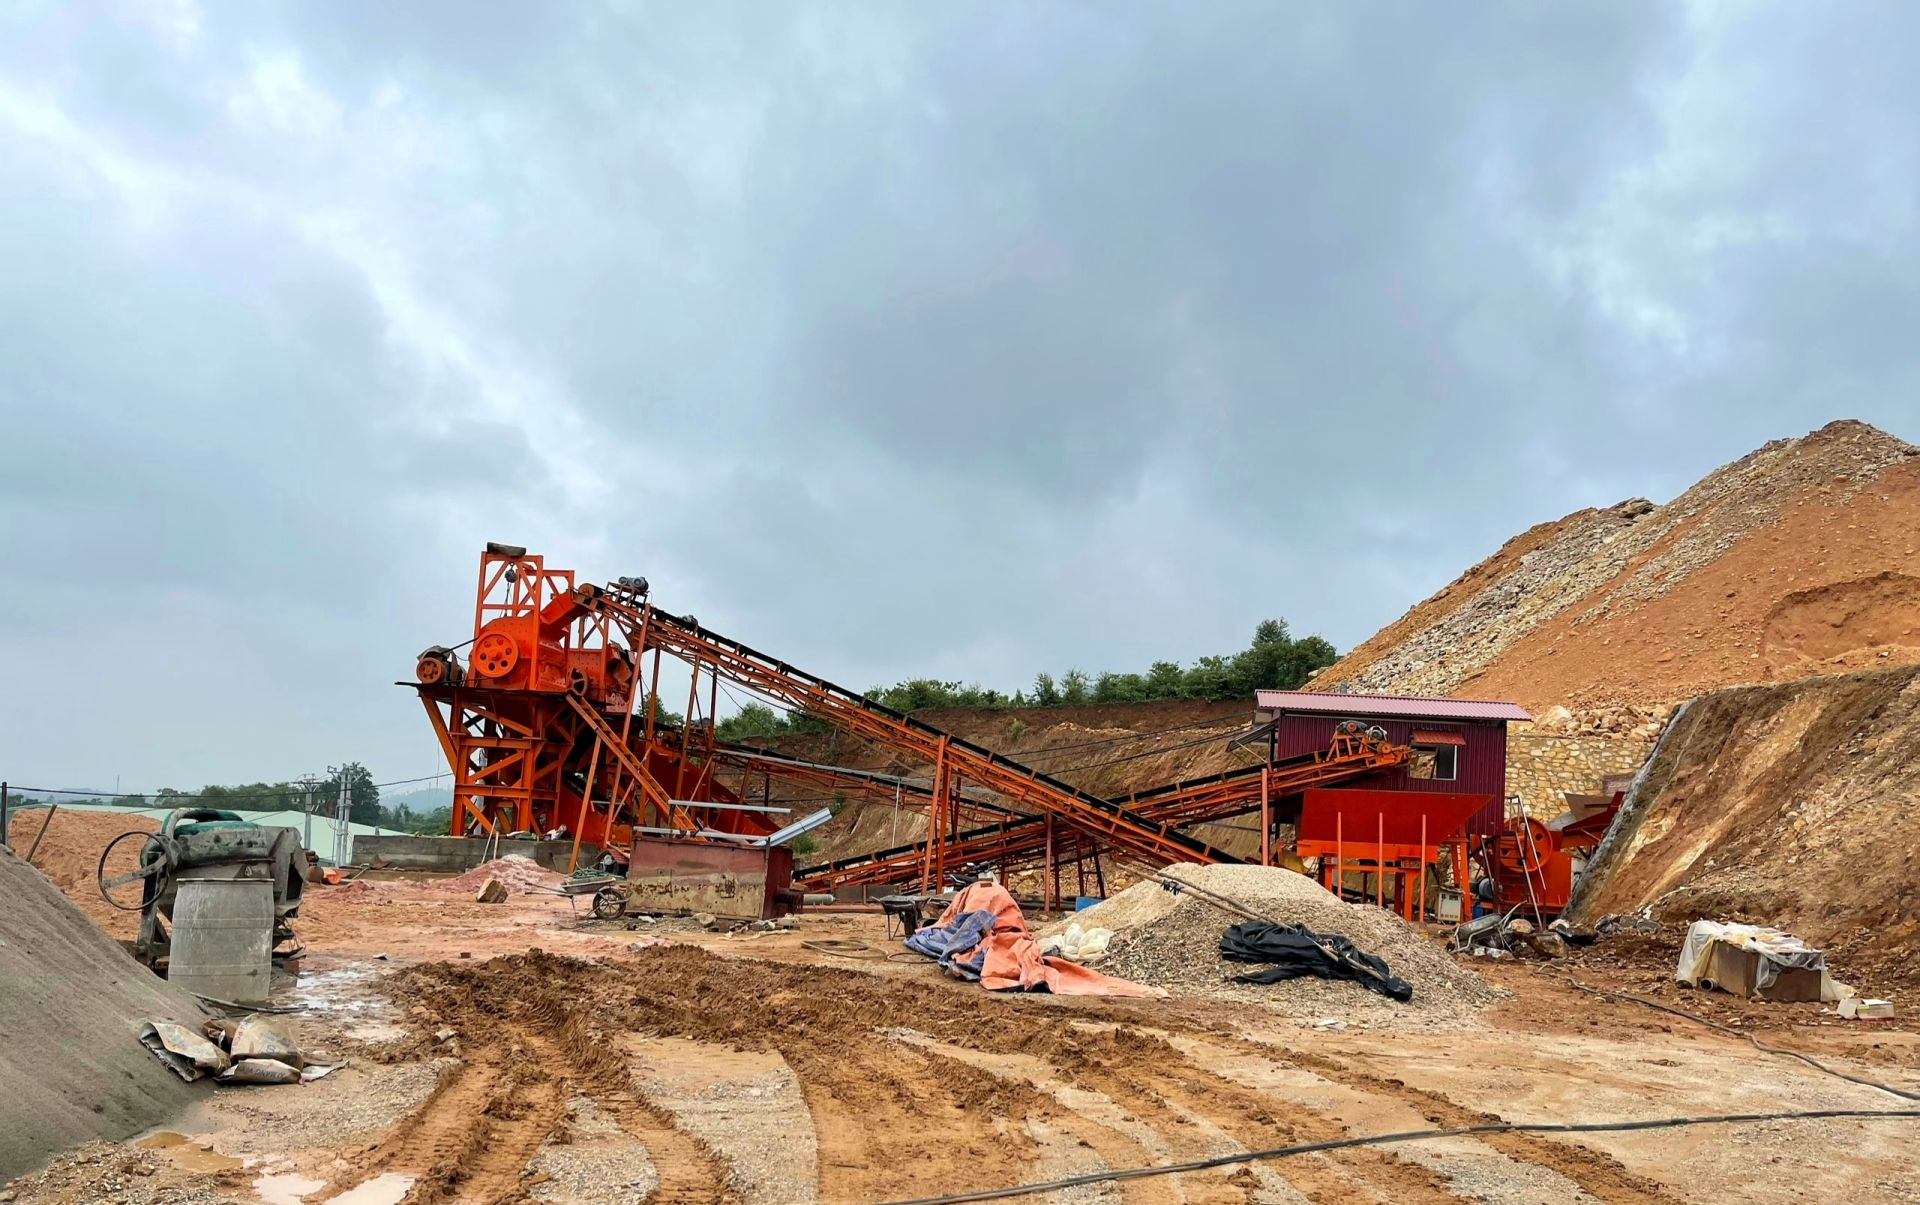 Cơ sở khai thác đá làm vật liệu xây dựng thông thường của Công ty cổ phần Thanh Nhàn (xã Thạch Khoán, huyện Thanh Sơn) chấp hành các quy định của pháp luật trong hoạt động khai thác khoáng sản